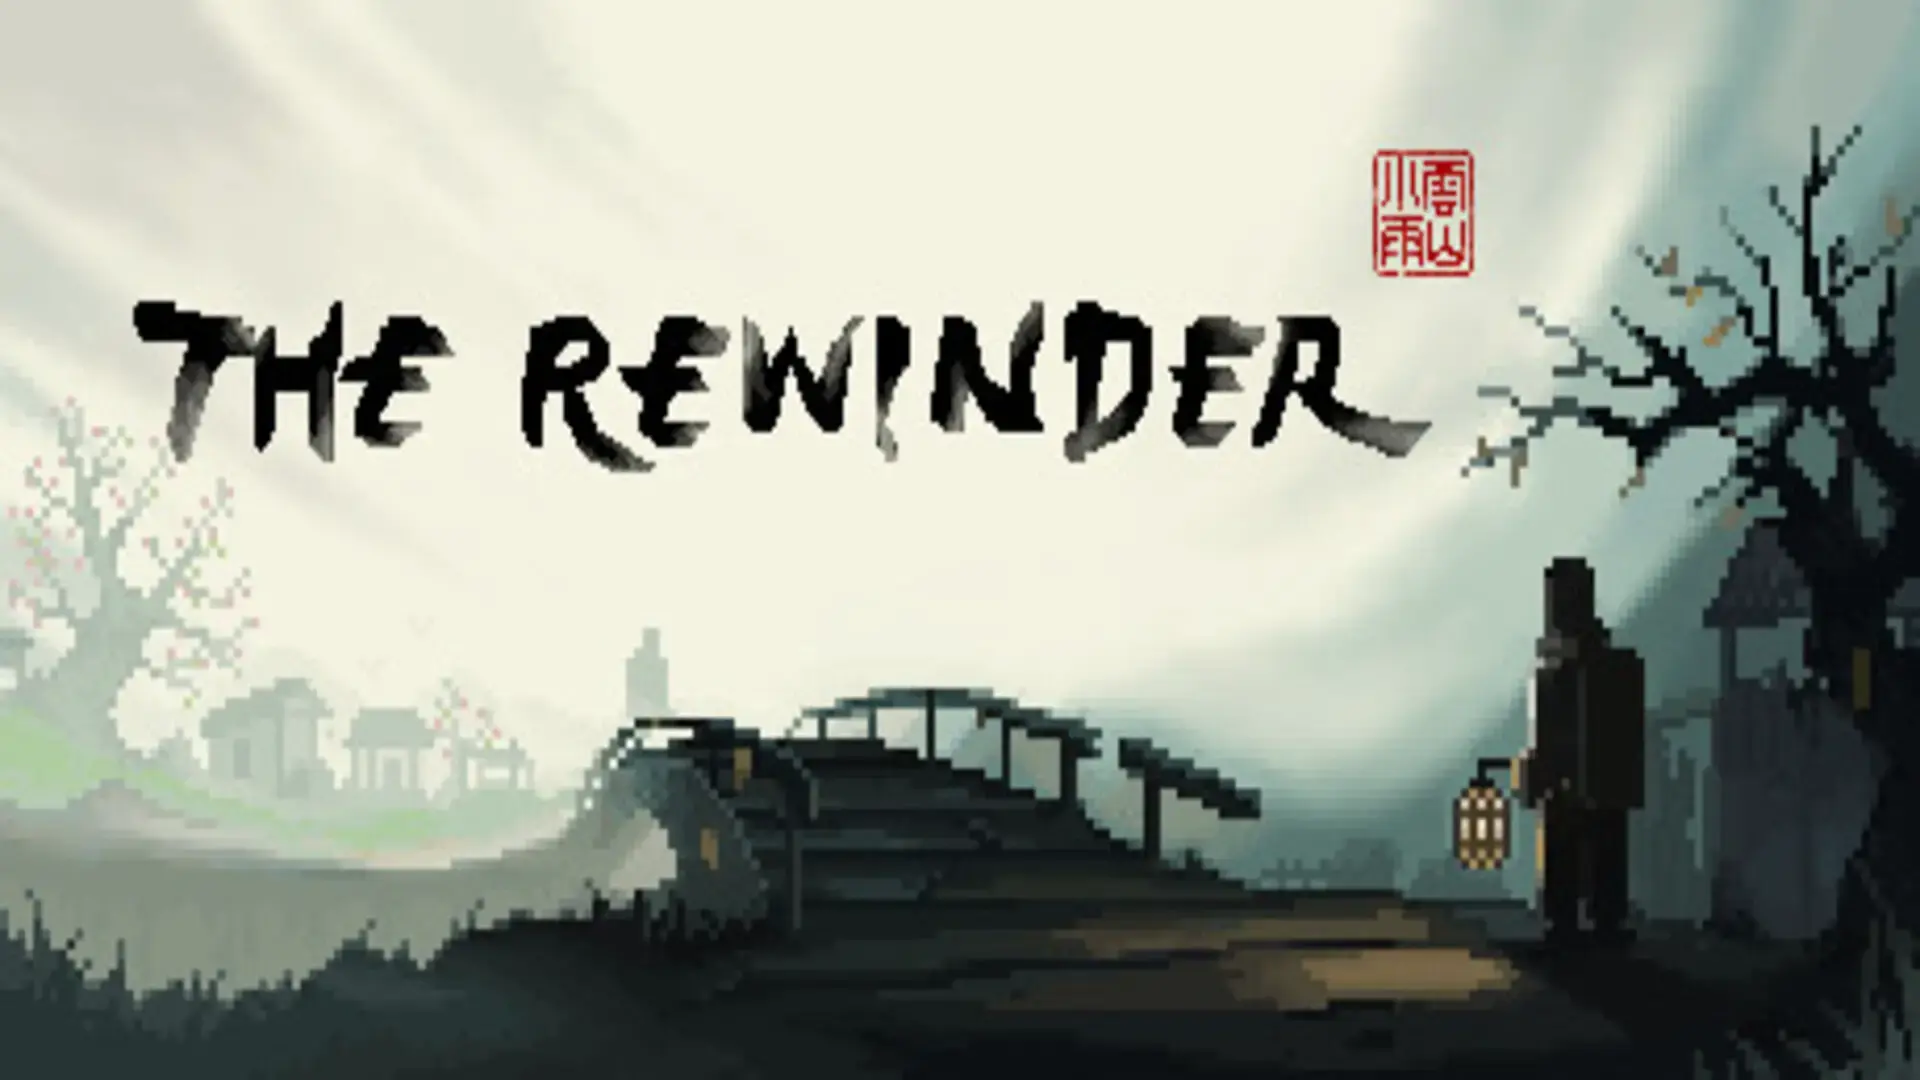 The Rewinder – Free Download (v1.63)